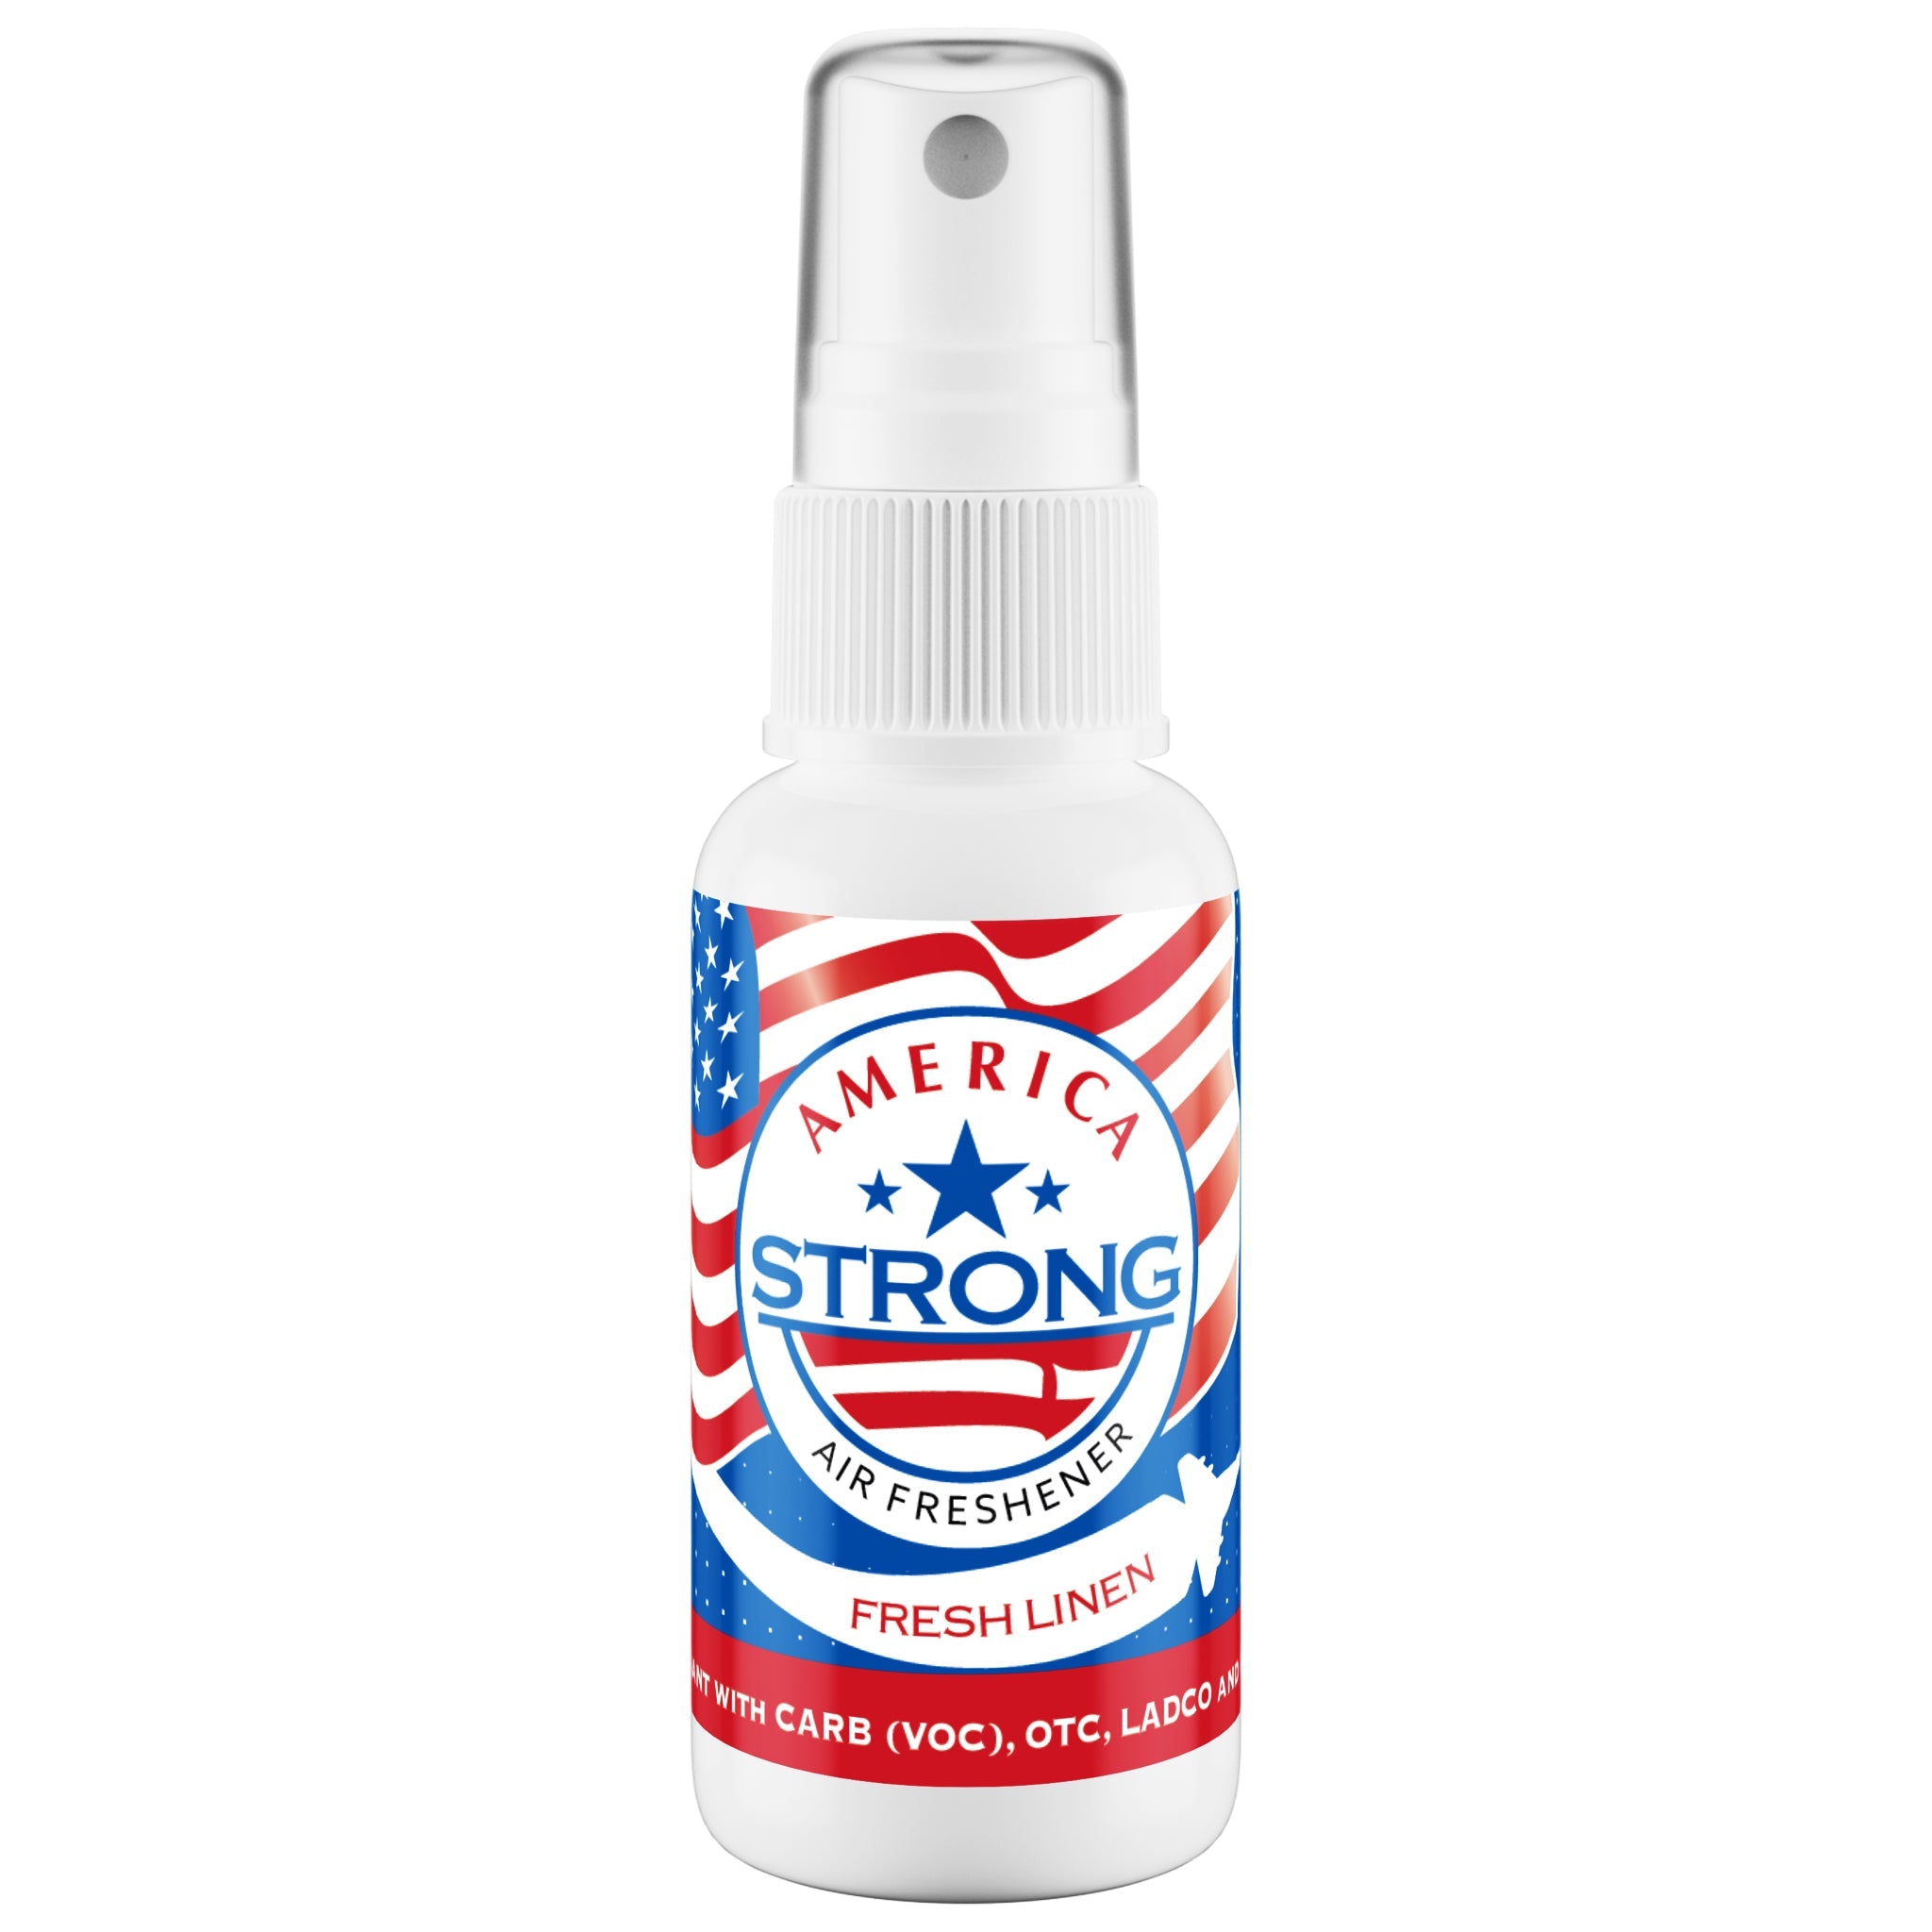 America Strong Air Freshener - Fresh Linen Scent